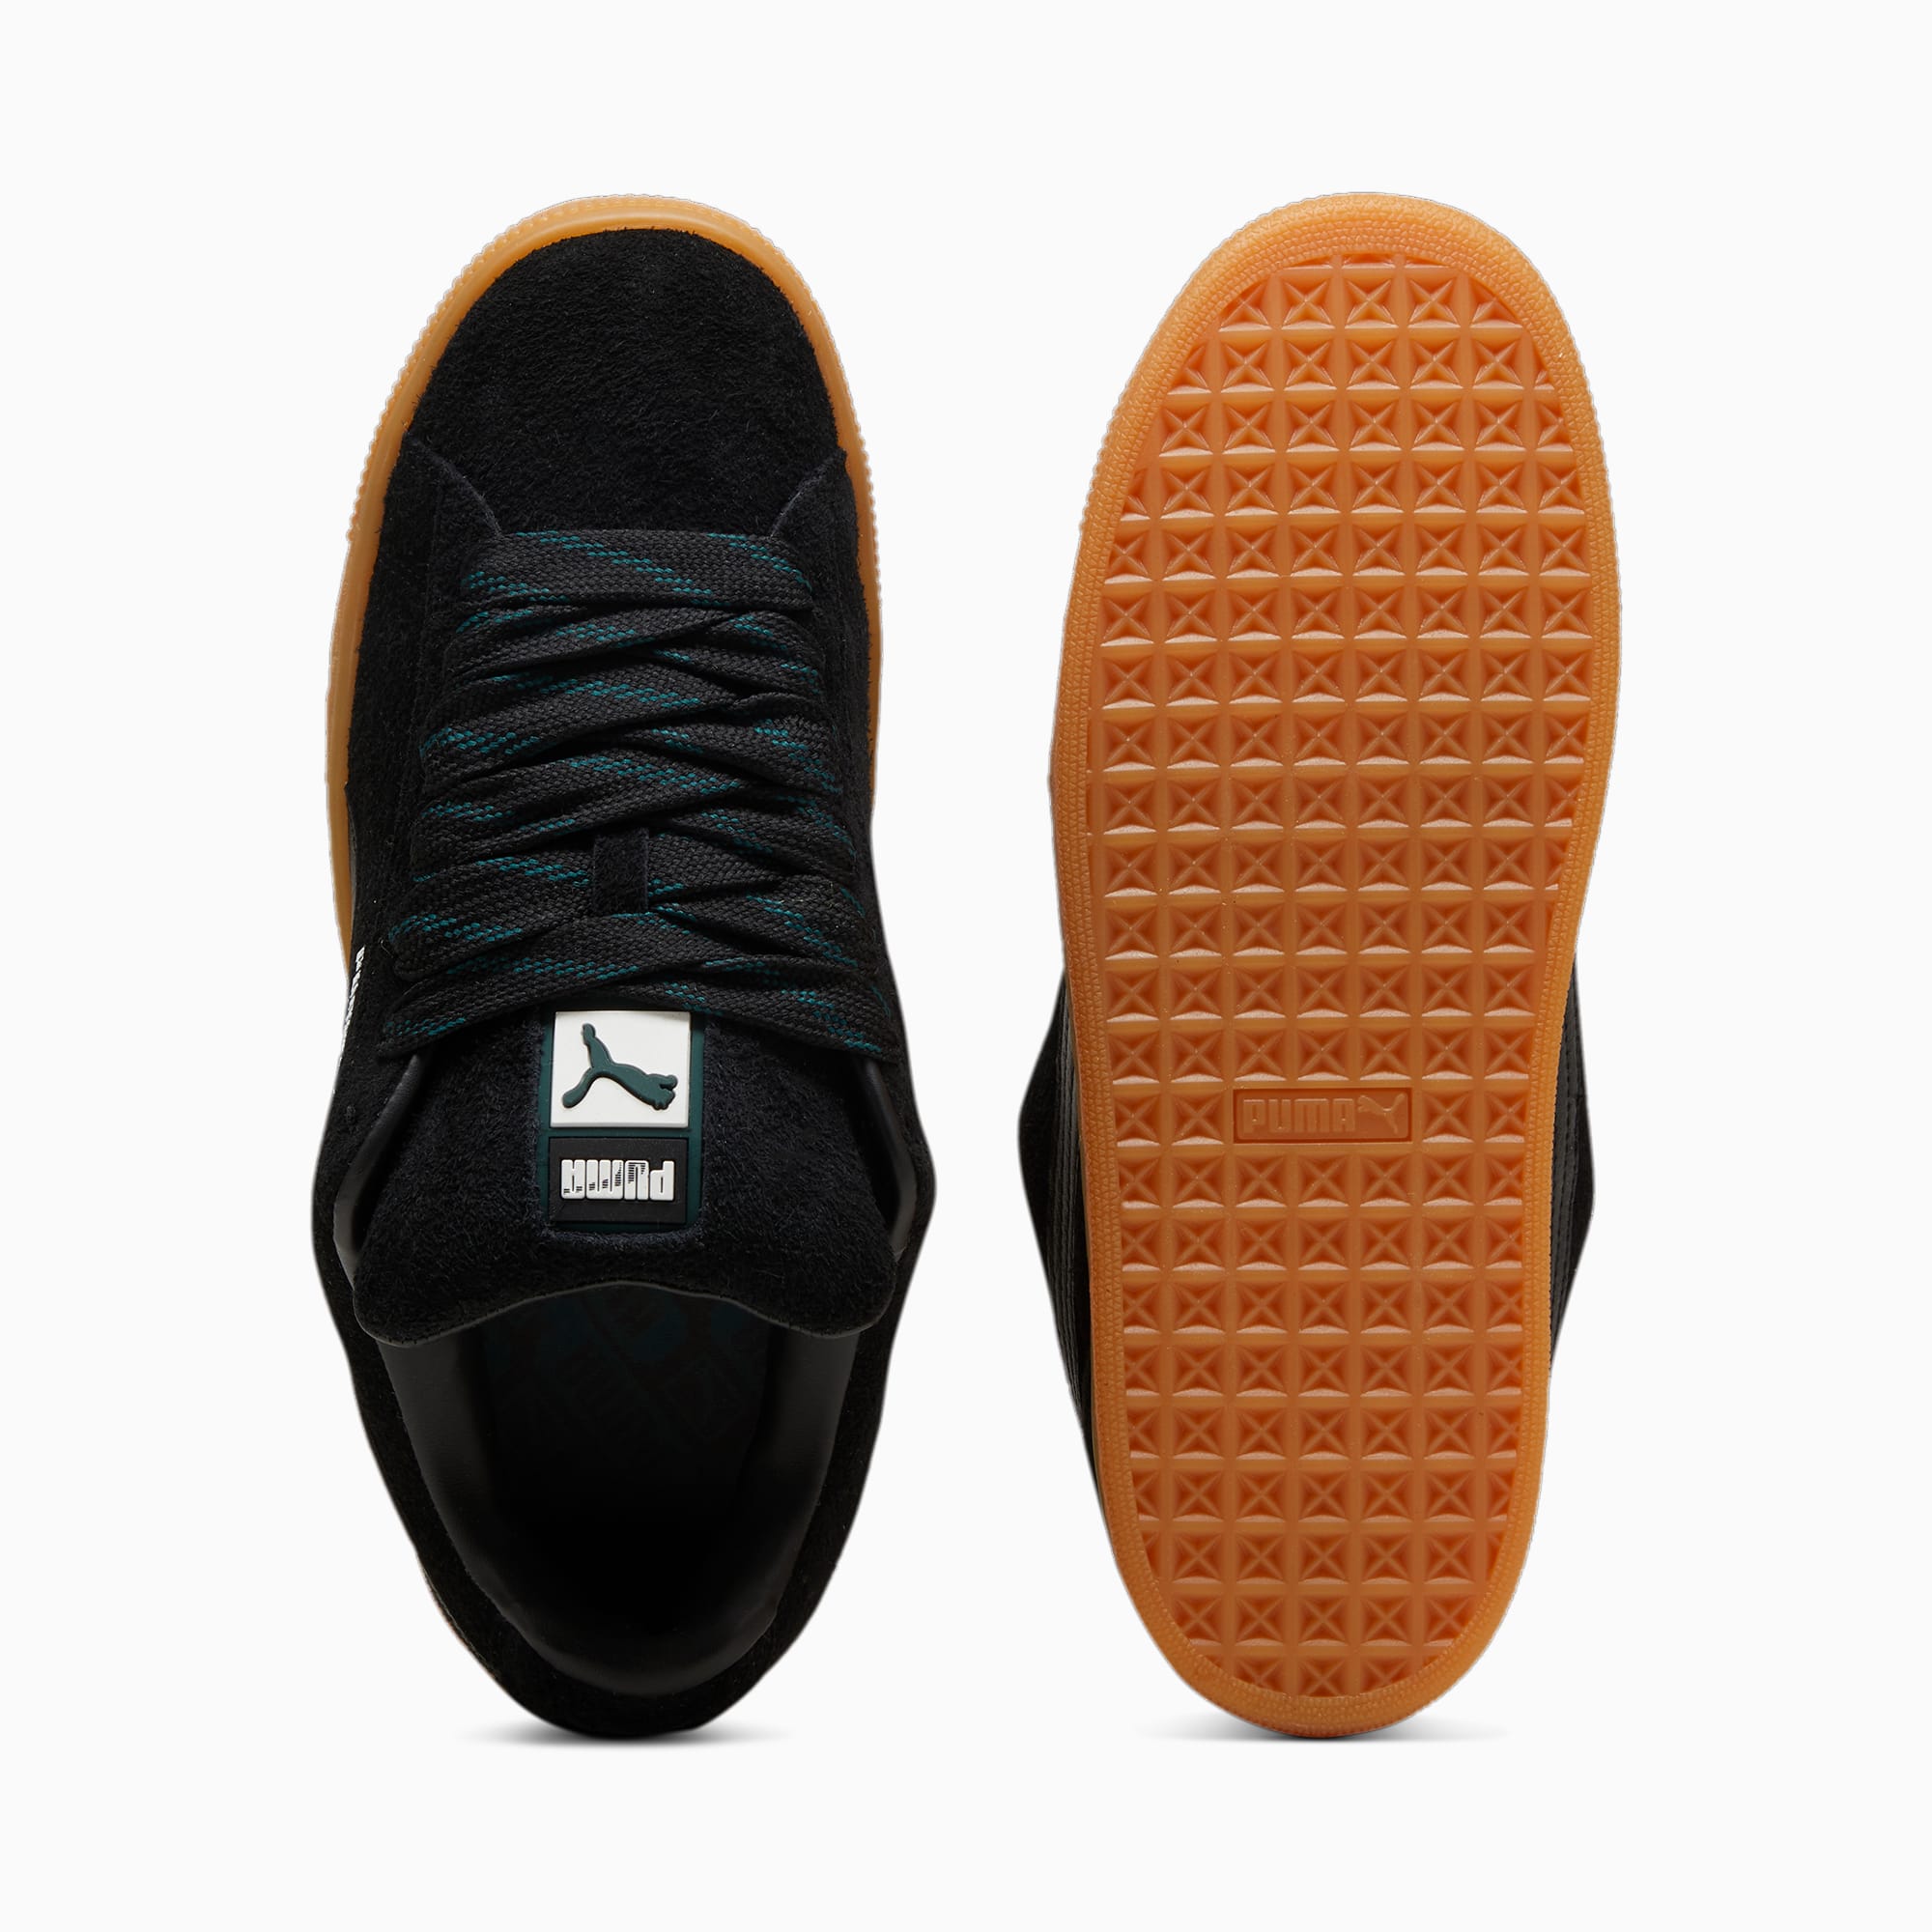 PUMA Suede XL Flecked Sneakers Unisex Schuhe, Schwarz/Grün, Größe: 42, Schuhe